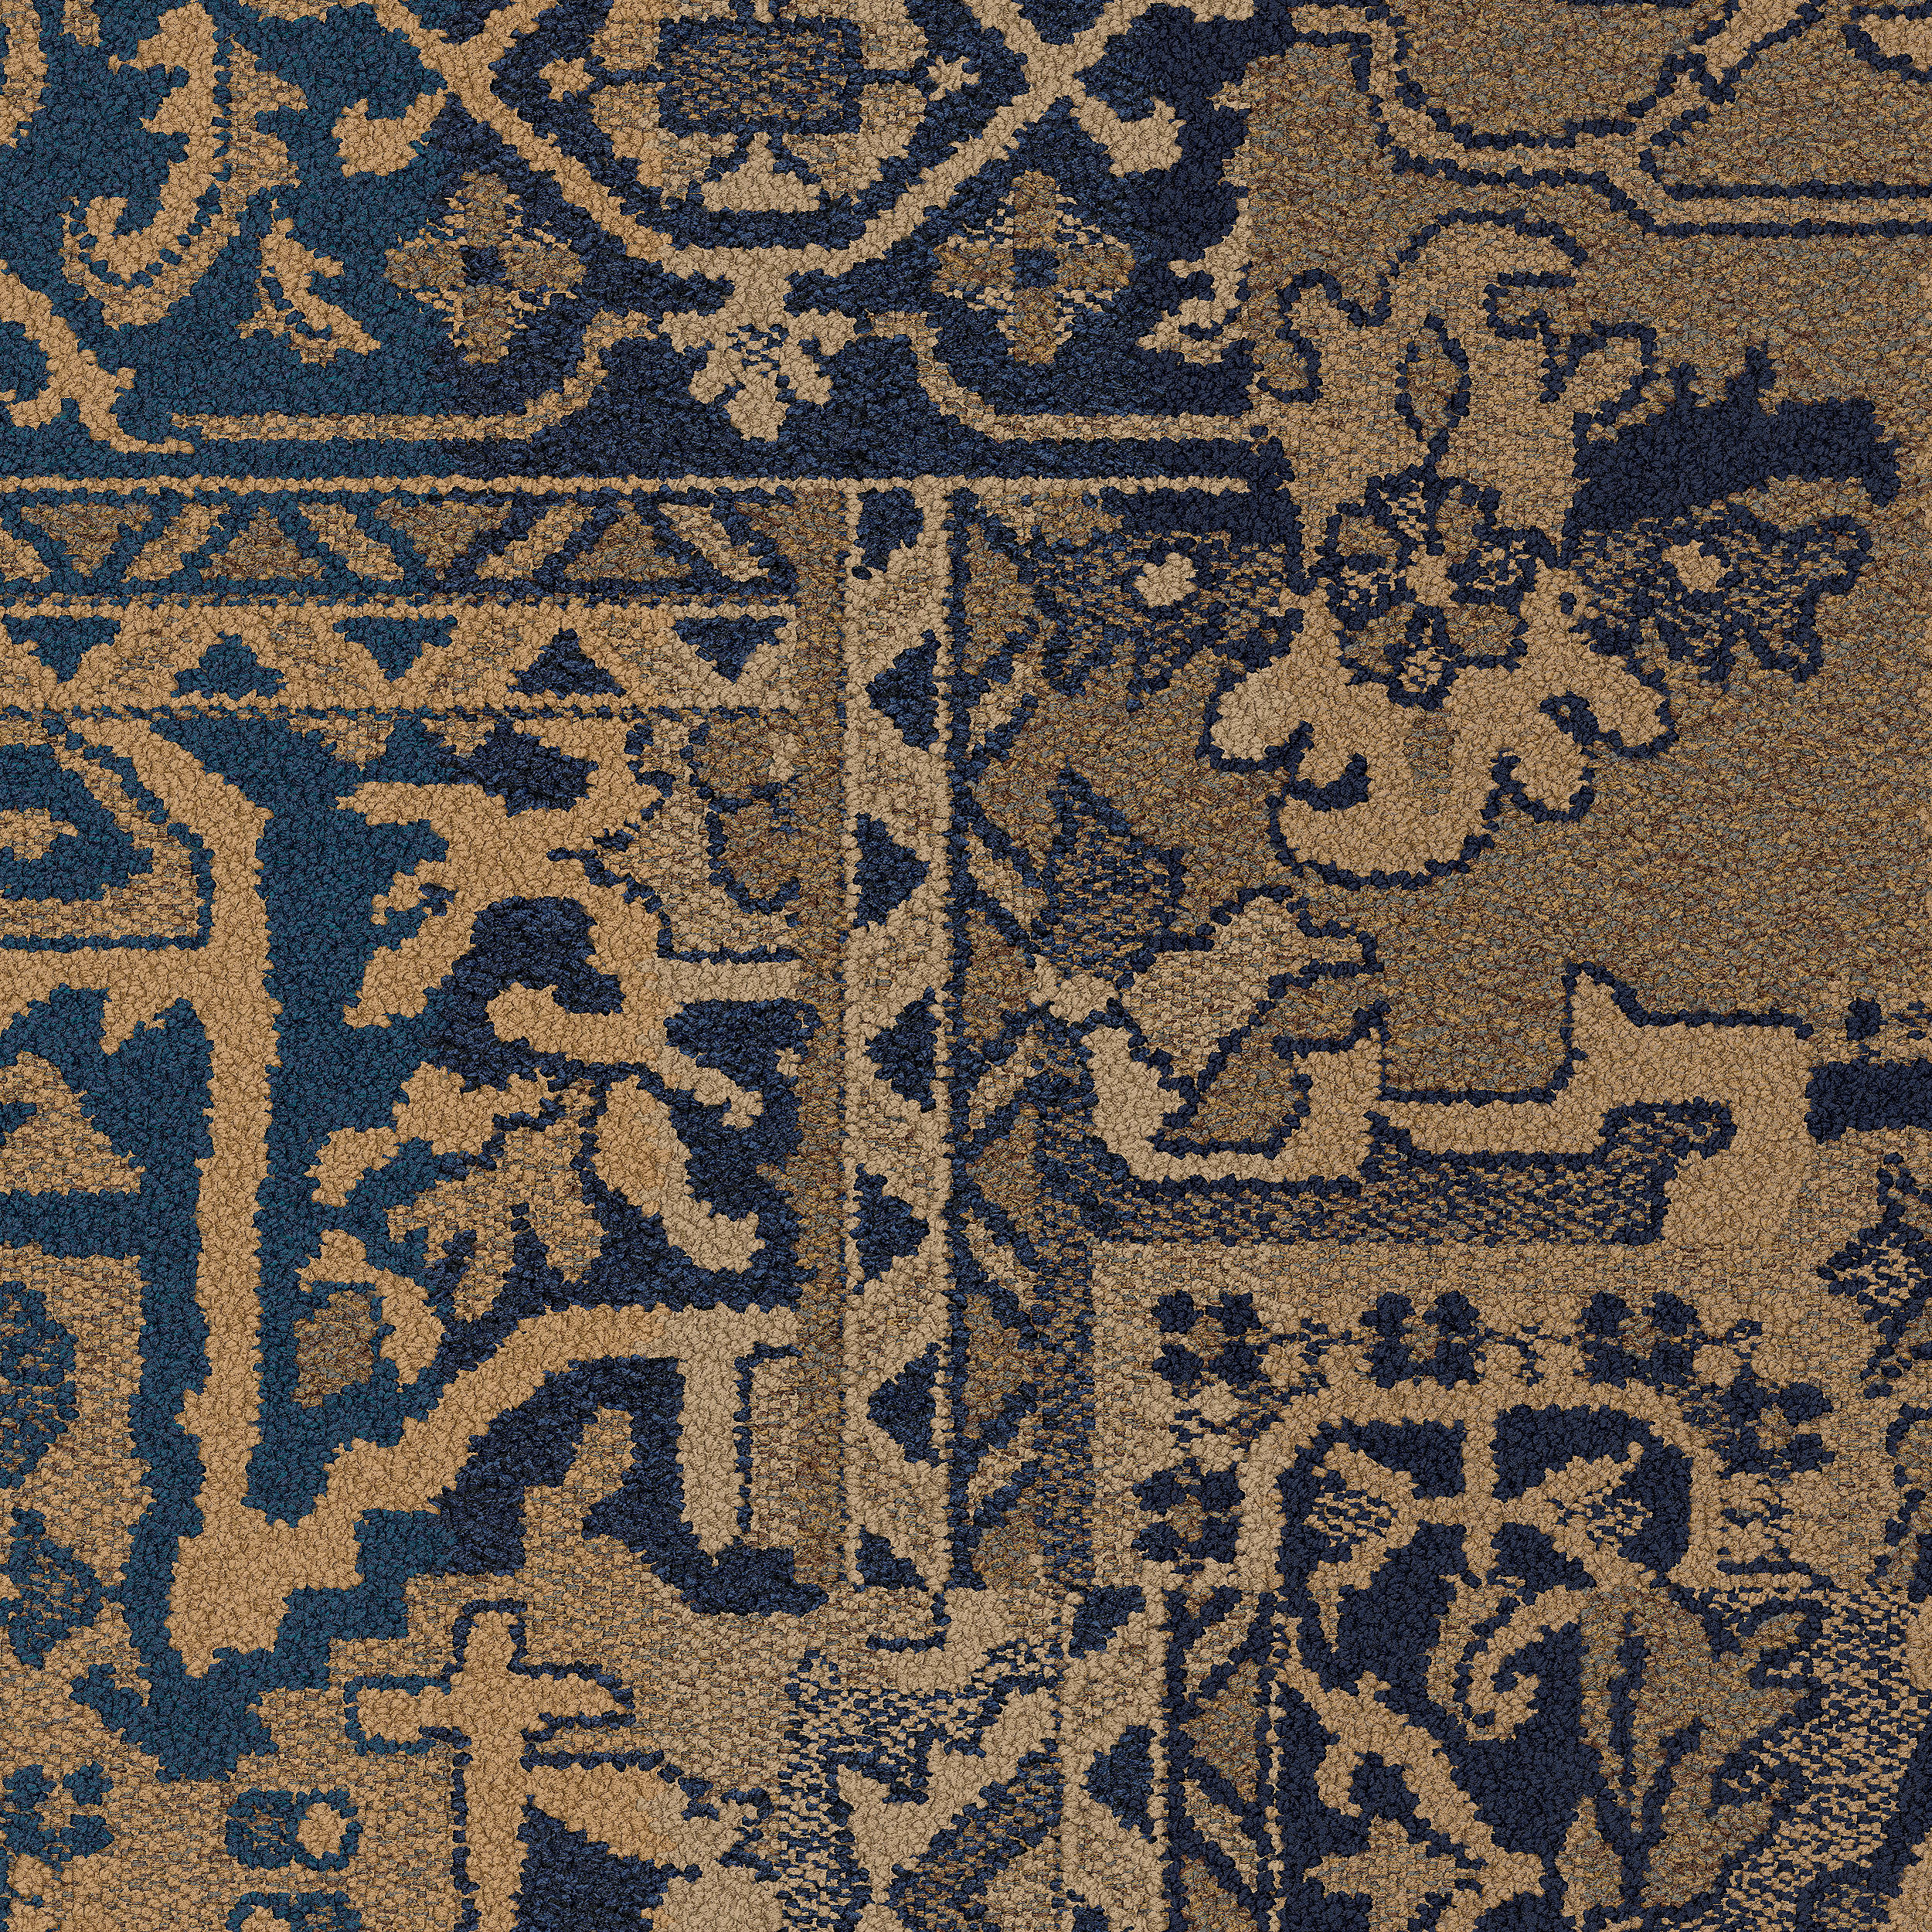 Antiquities carpet tile in Amber número de imagen 6